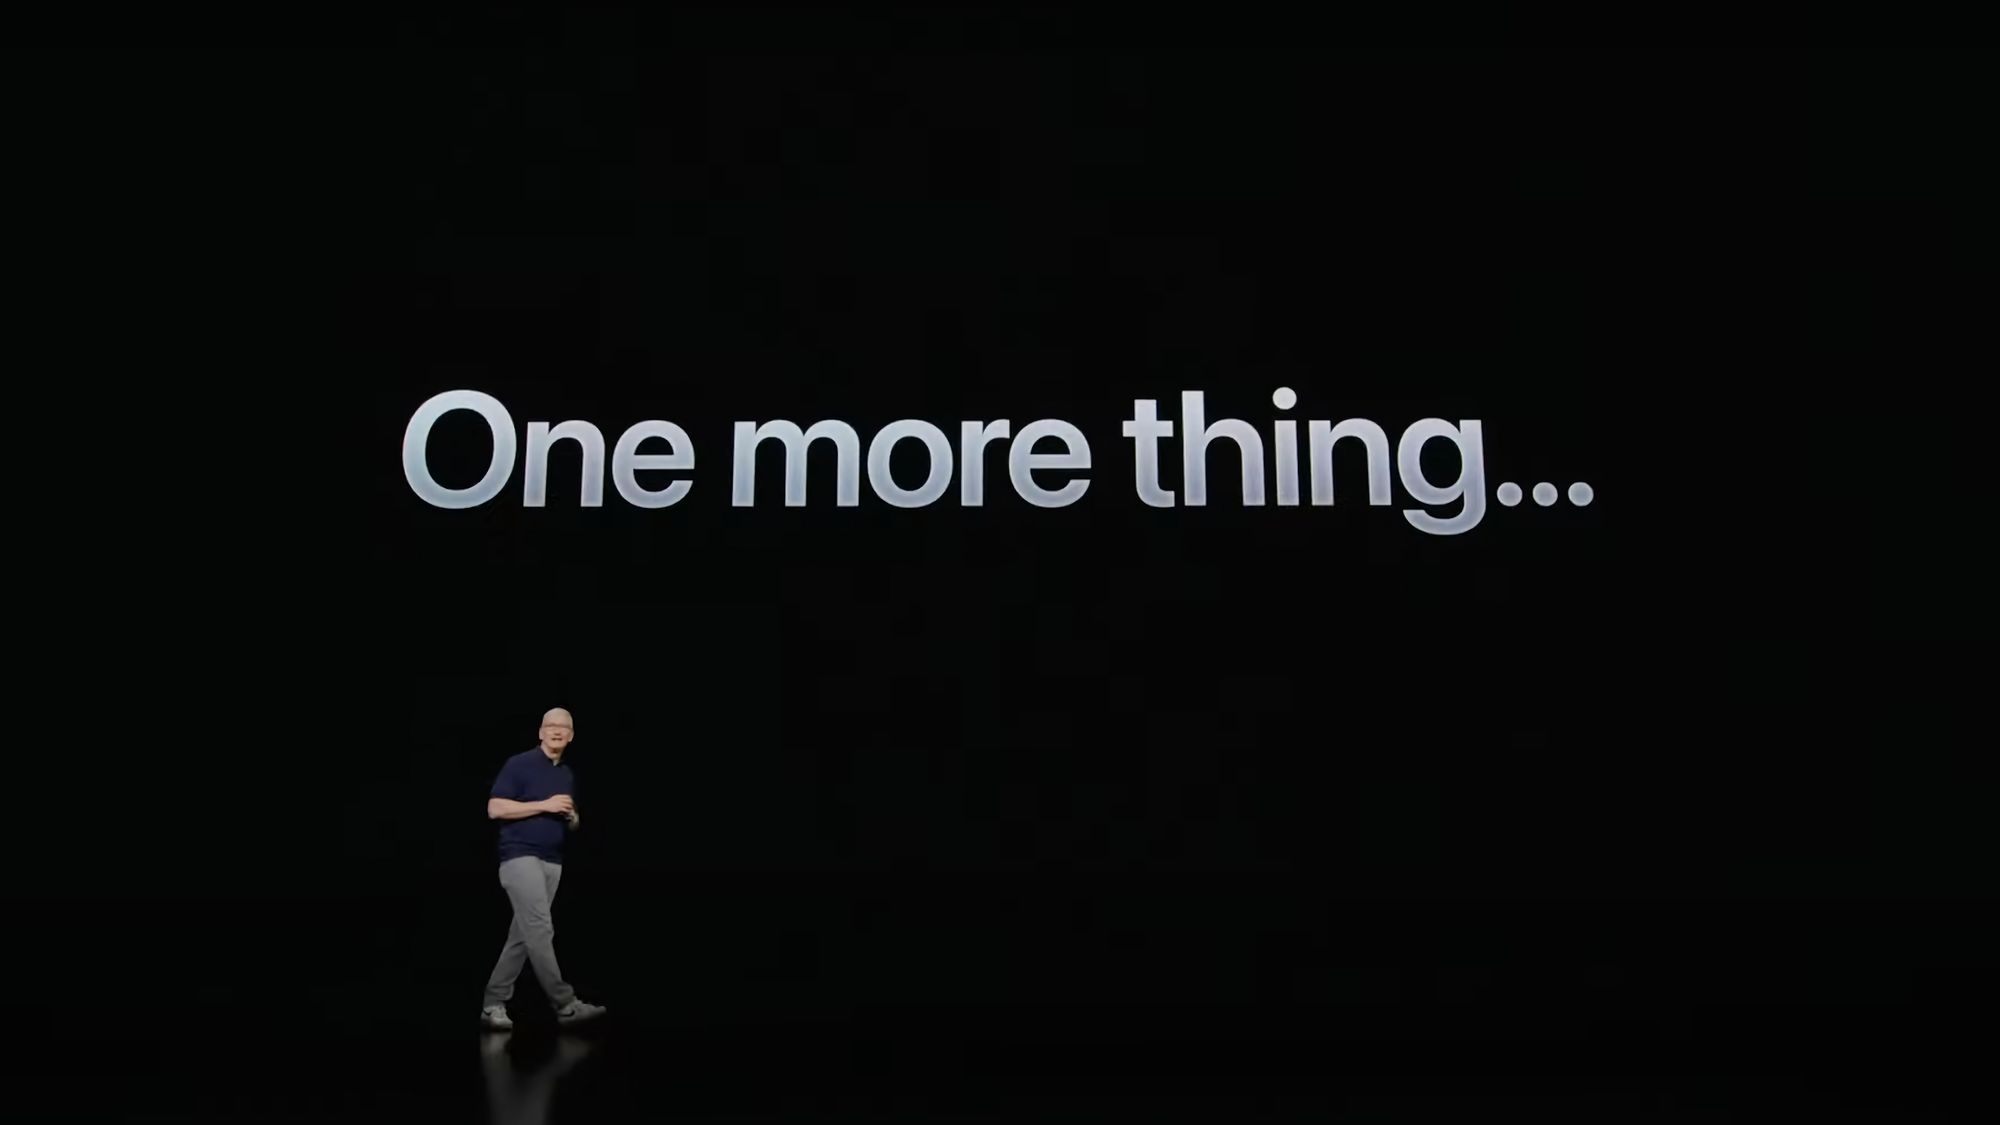 Conheces todos os “One more thing” das Keynotes da Apple?